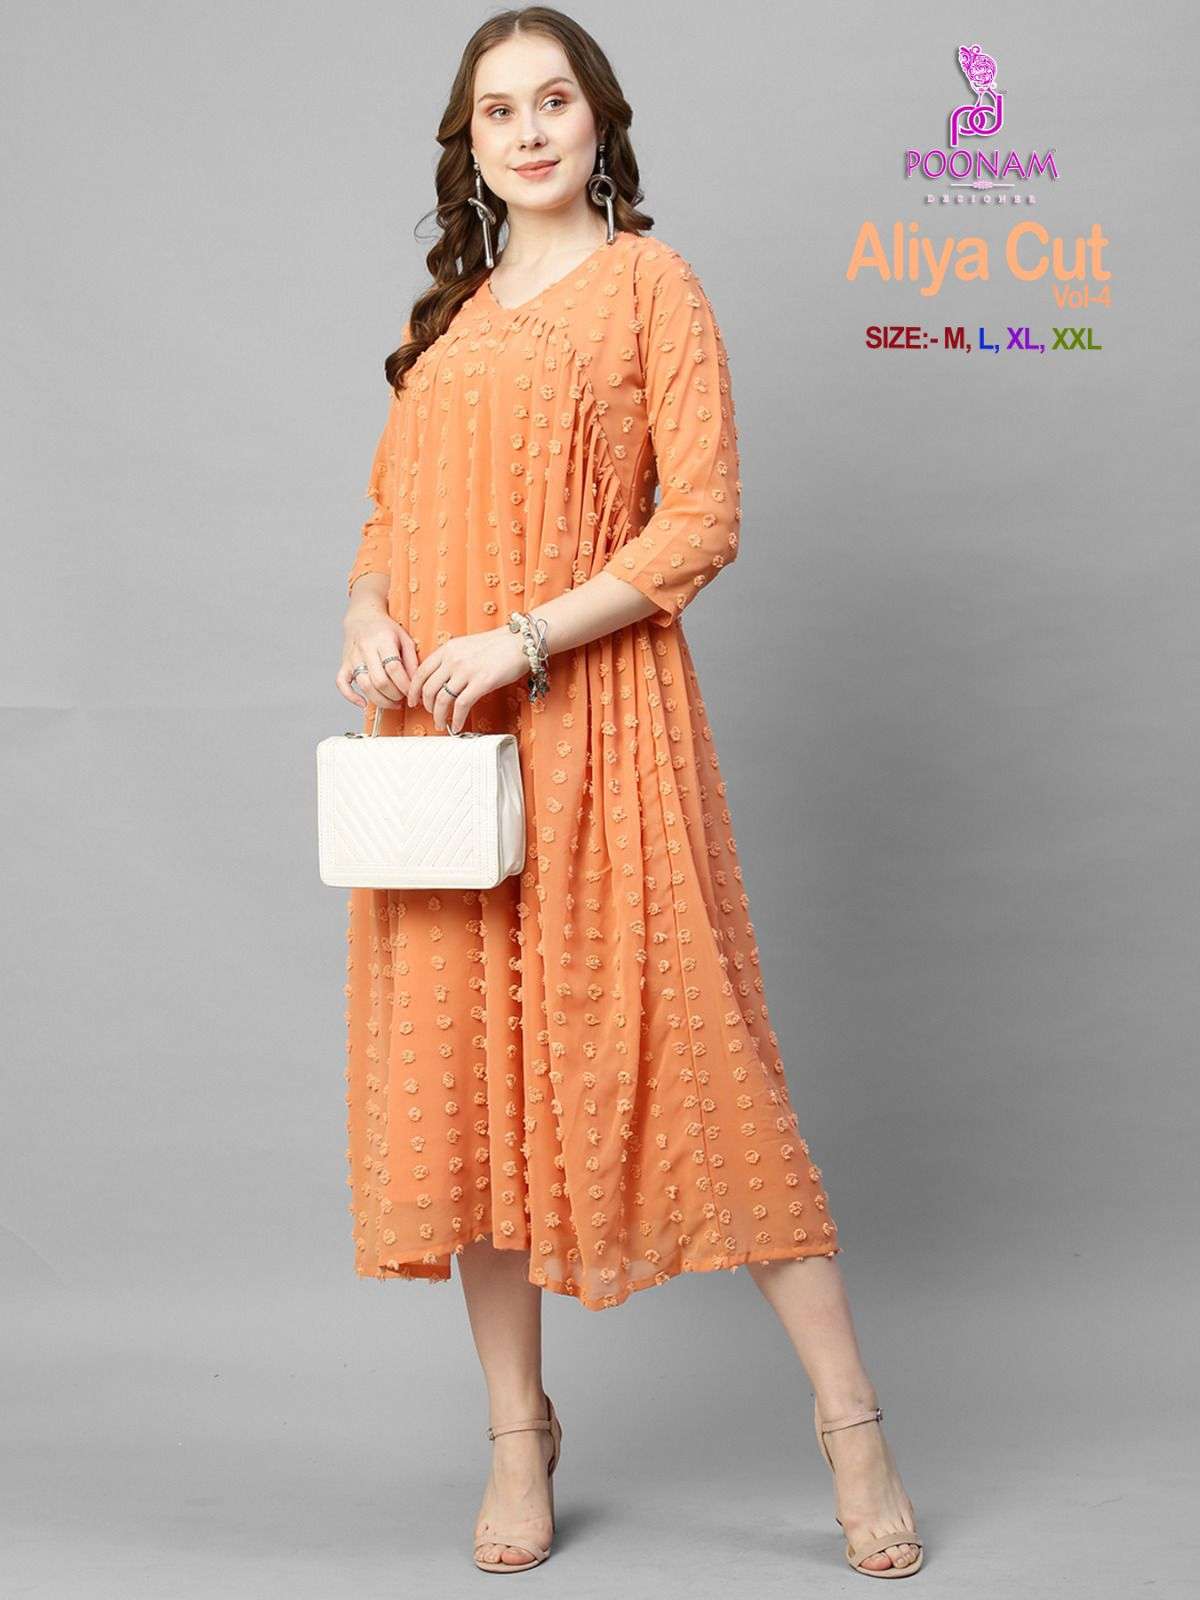 poonam designer aliya cut vol-4 1001-1006 series georgette butti fabric aliya cut gown catalogue design 2023